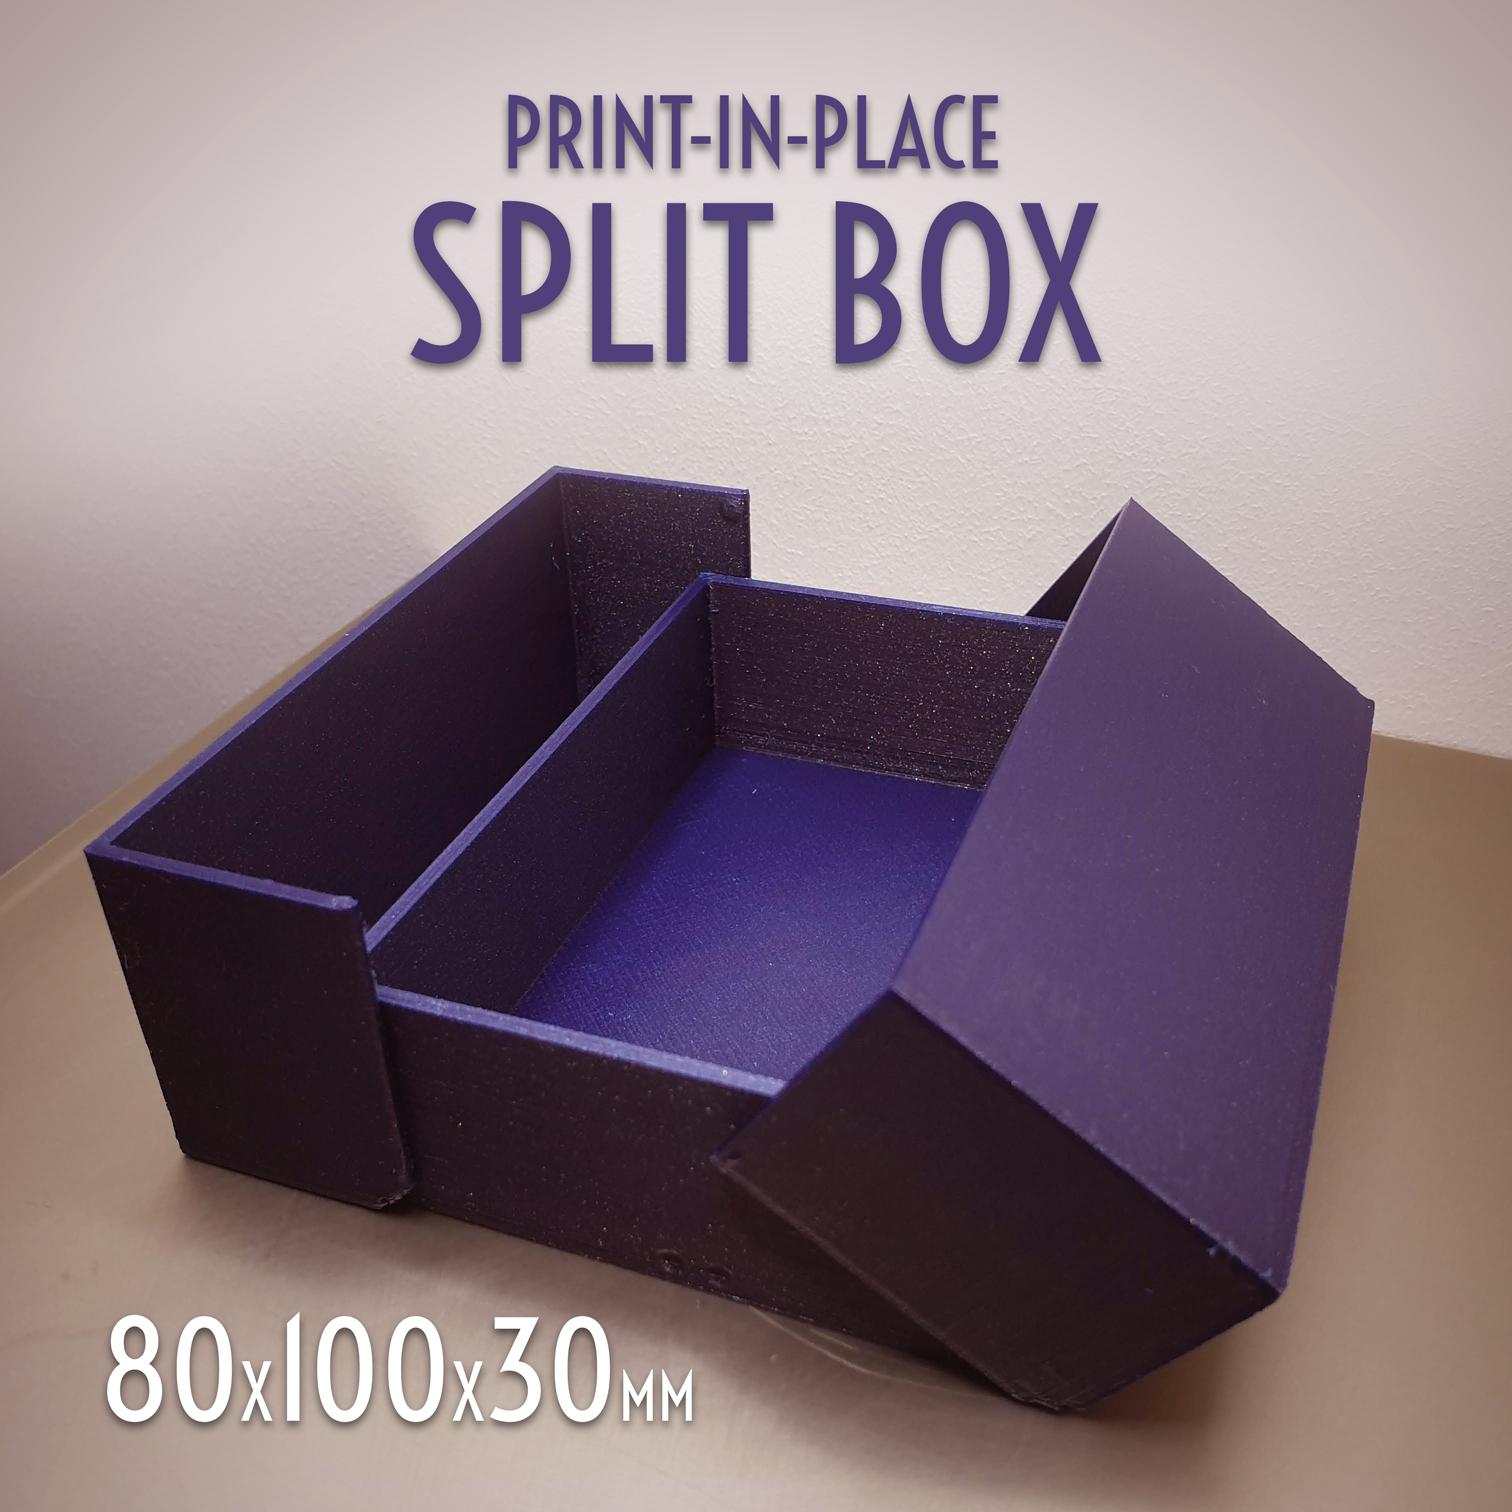 Print-in-Place Split Box 80x100x30mm 3d model